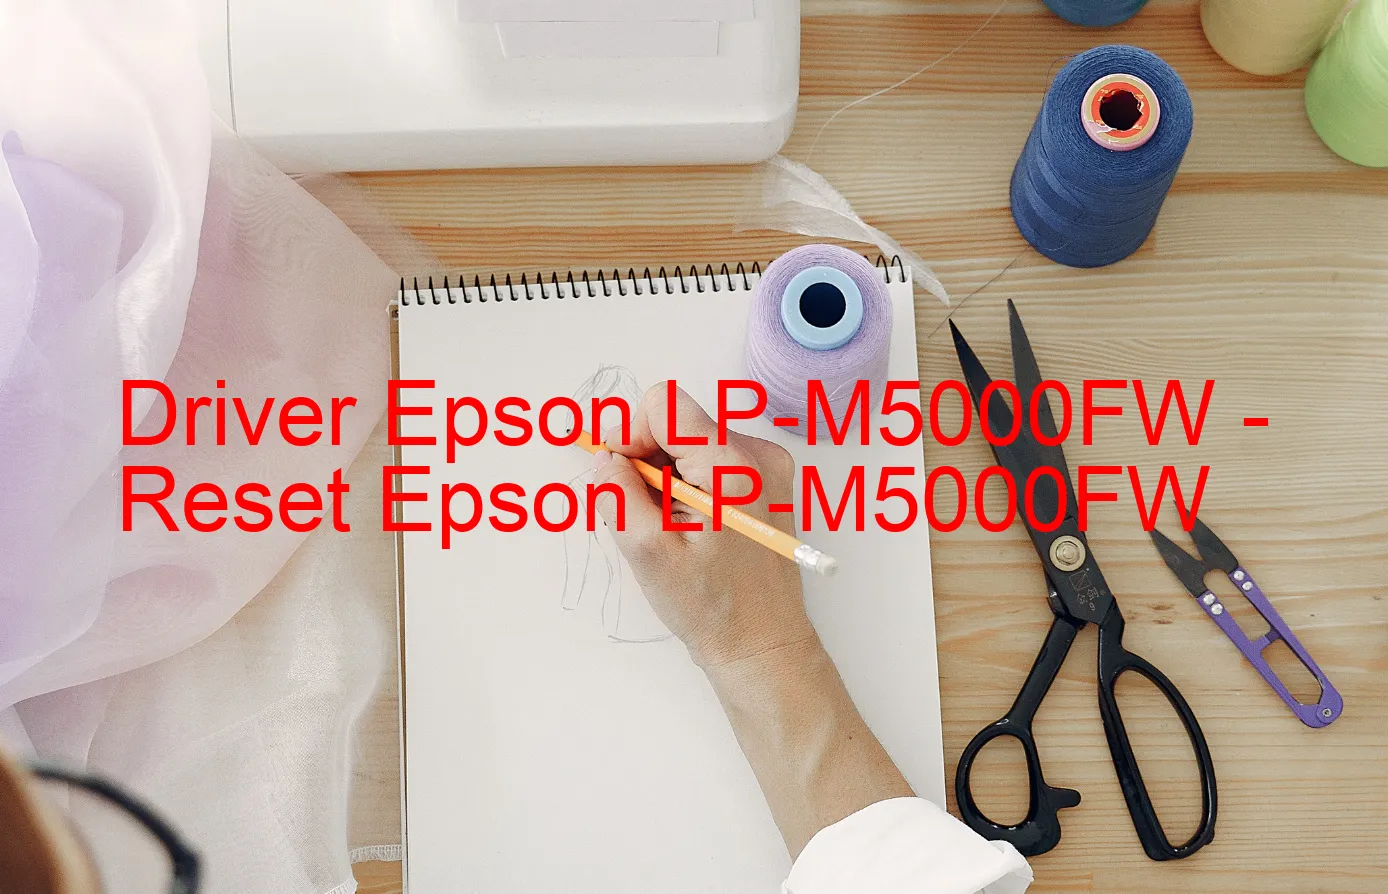 Epson LP-M5000FWのドライバー、Epson LP-M5000FWのリセットソフトウェア